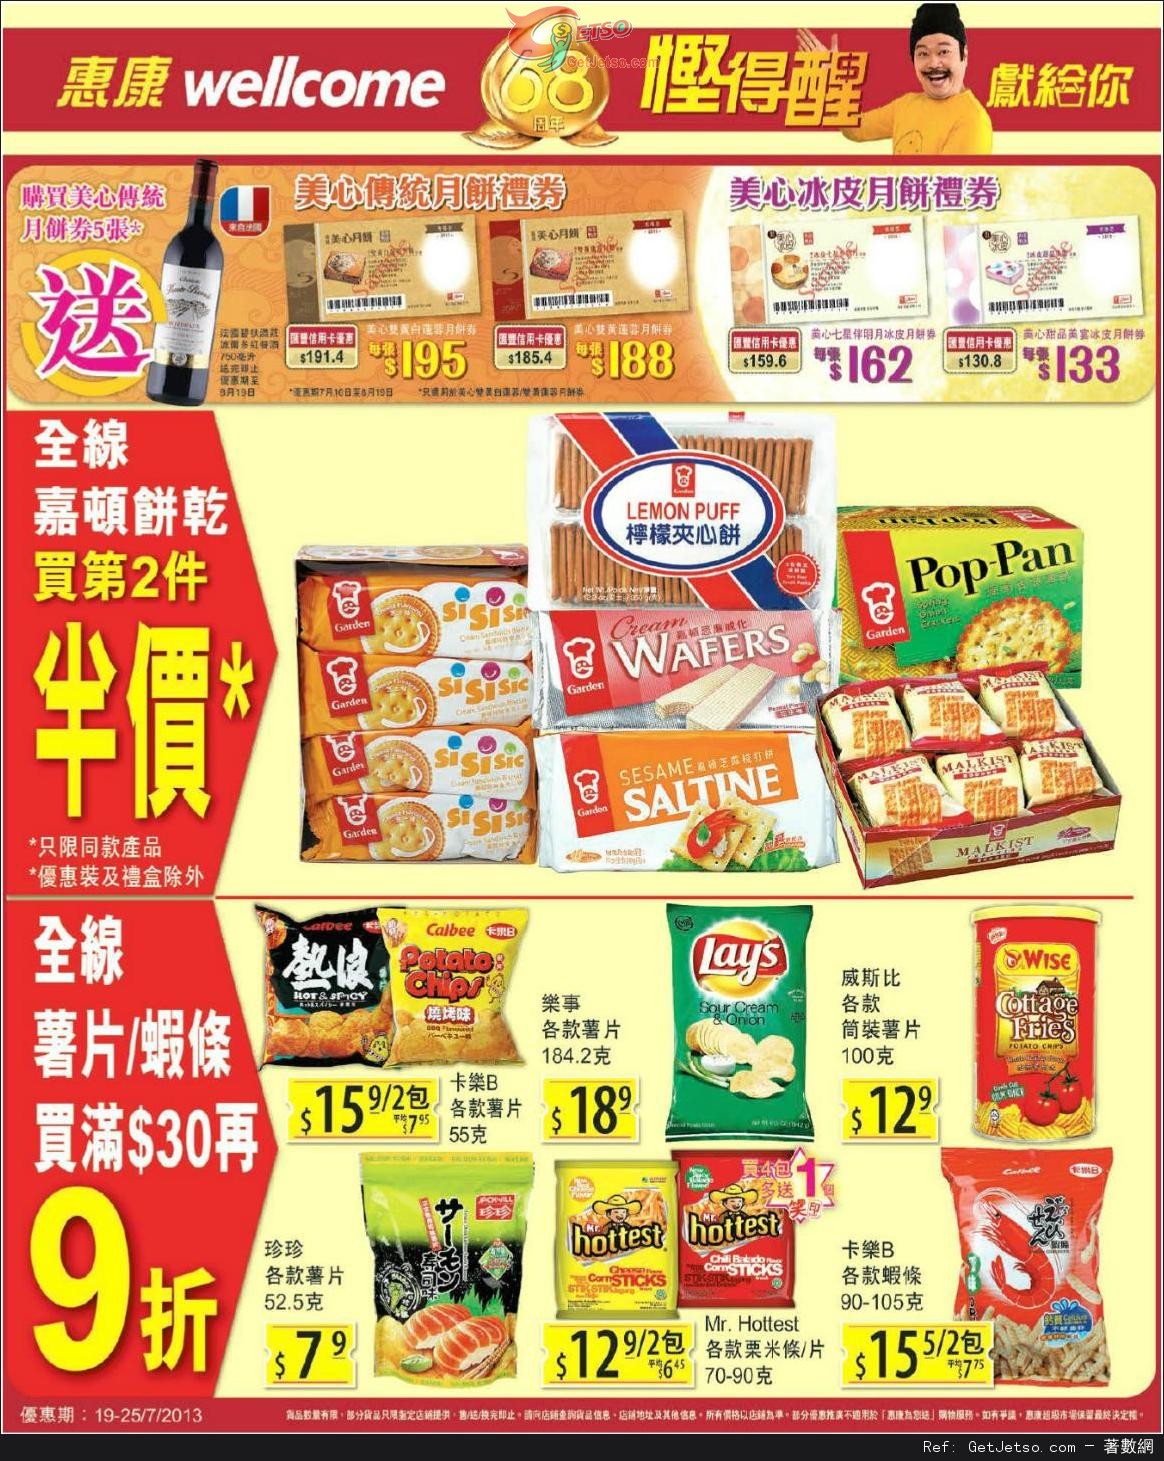 惠康超級市場全線嘉頓餅乾第二件半價及薯片蝦條購買優惠(至13年7月25日)圖片1